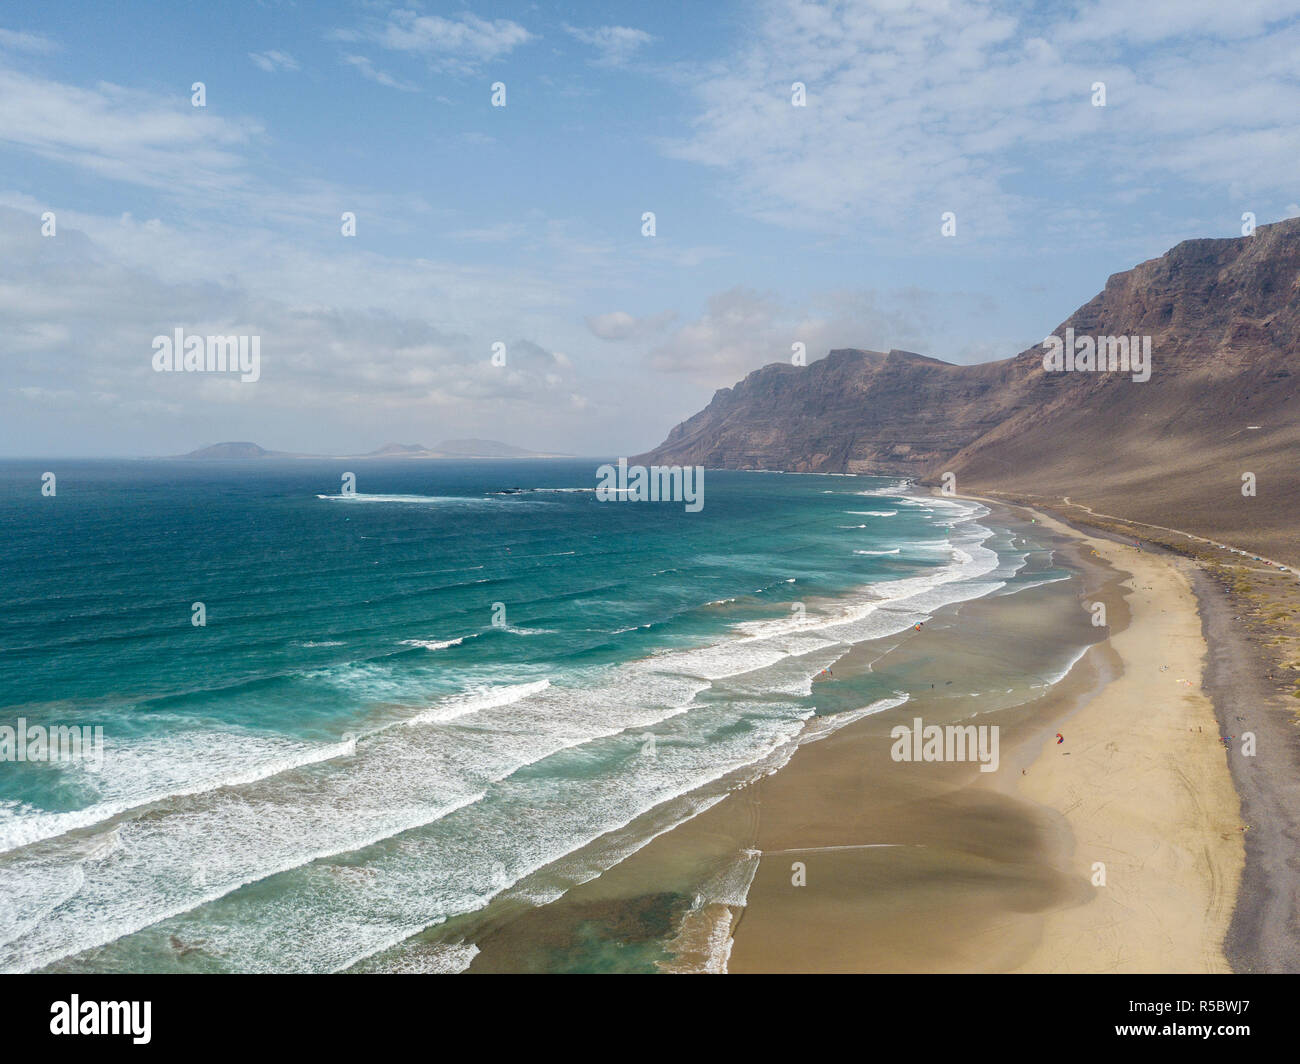 Vue aérienne de la plage de Famara, Lanzarote, îles Canaries, Espagne. Kite surfer. Les personnes actives, l'eau le sport. D'ondes longues Banque D'Images